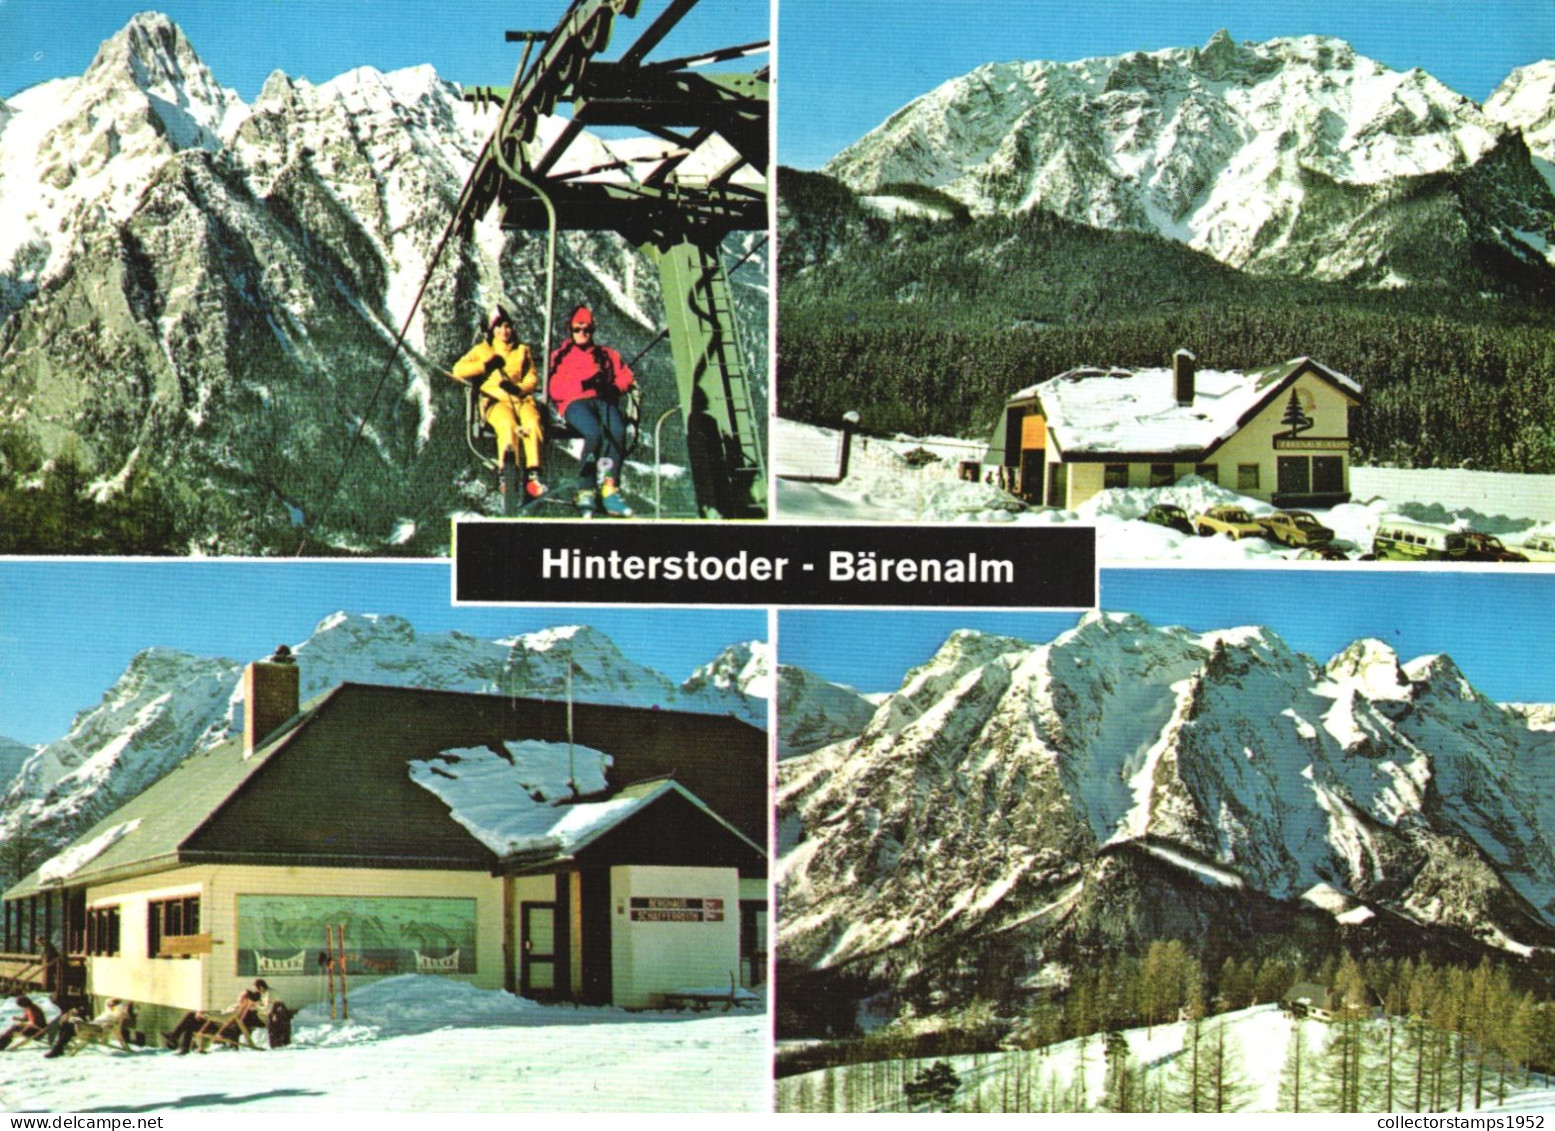 HINTERSTODER, MULTIPLE VIEWS, BARENALM, SKI LIFT, ARCHITECTURE, MOUNTAIN, AUSTRIA - Hinterstoder